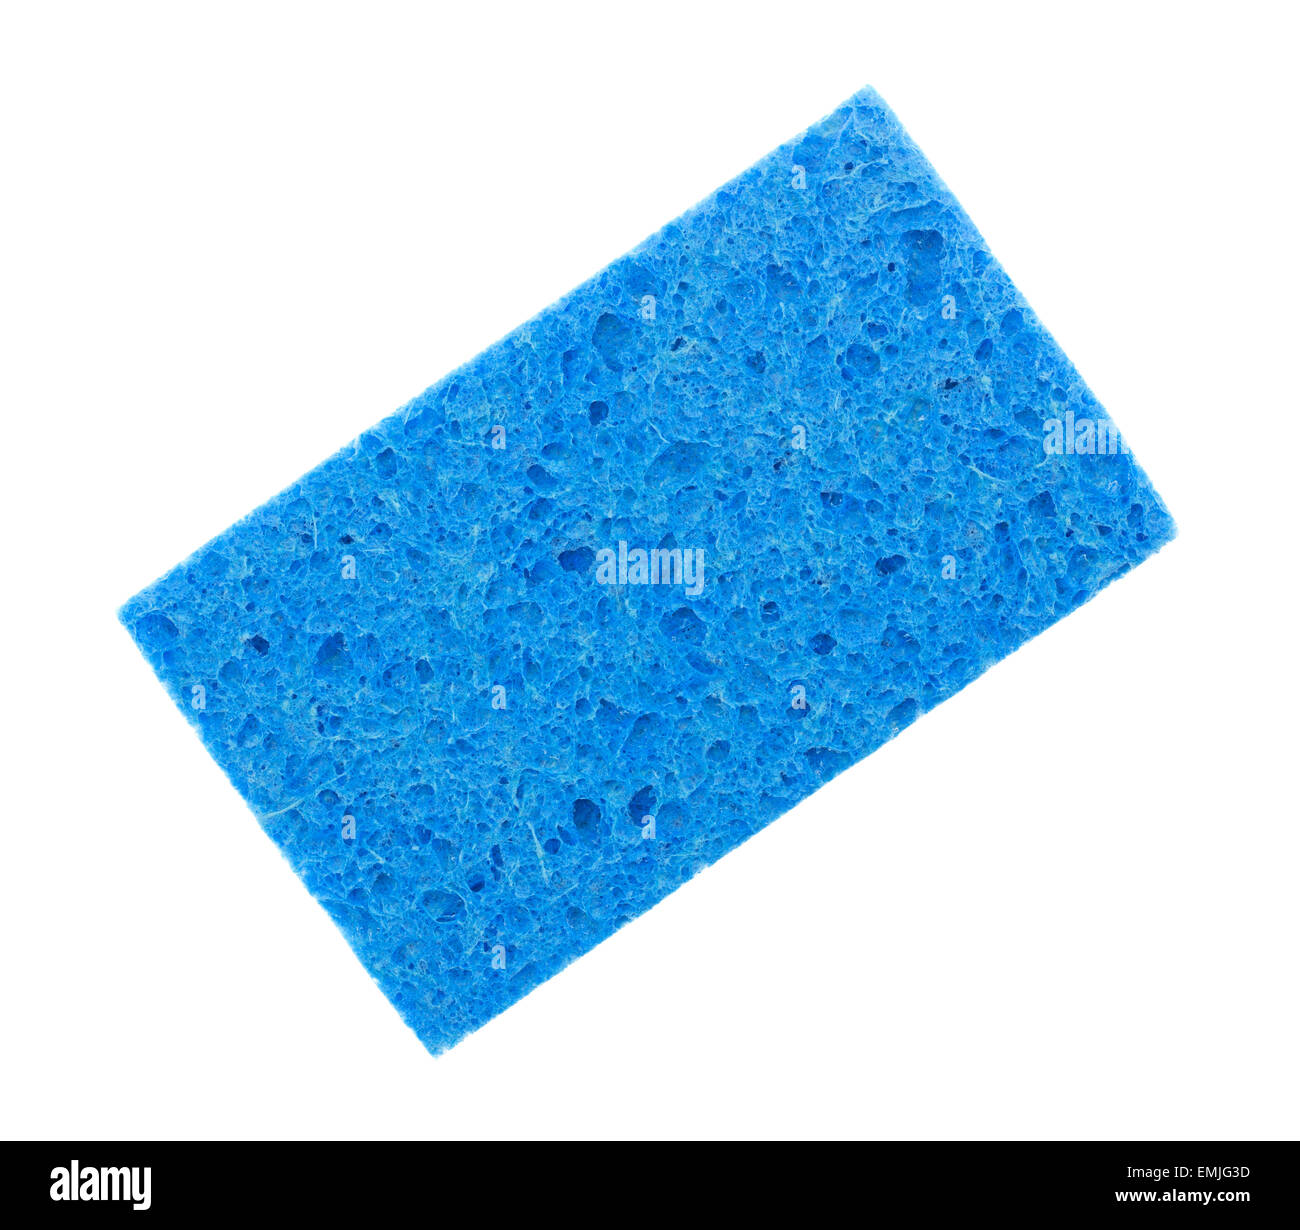 Einen neuen blauen Schwamm isoliert auf einem weißen Hintergrund. Stockfoto